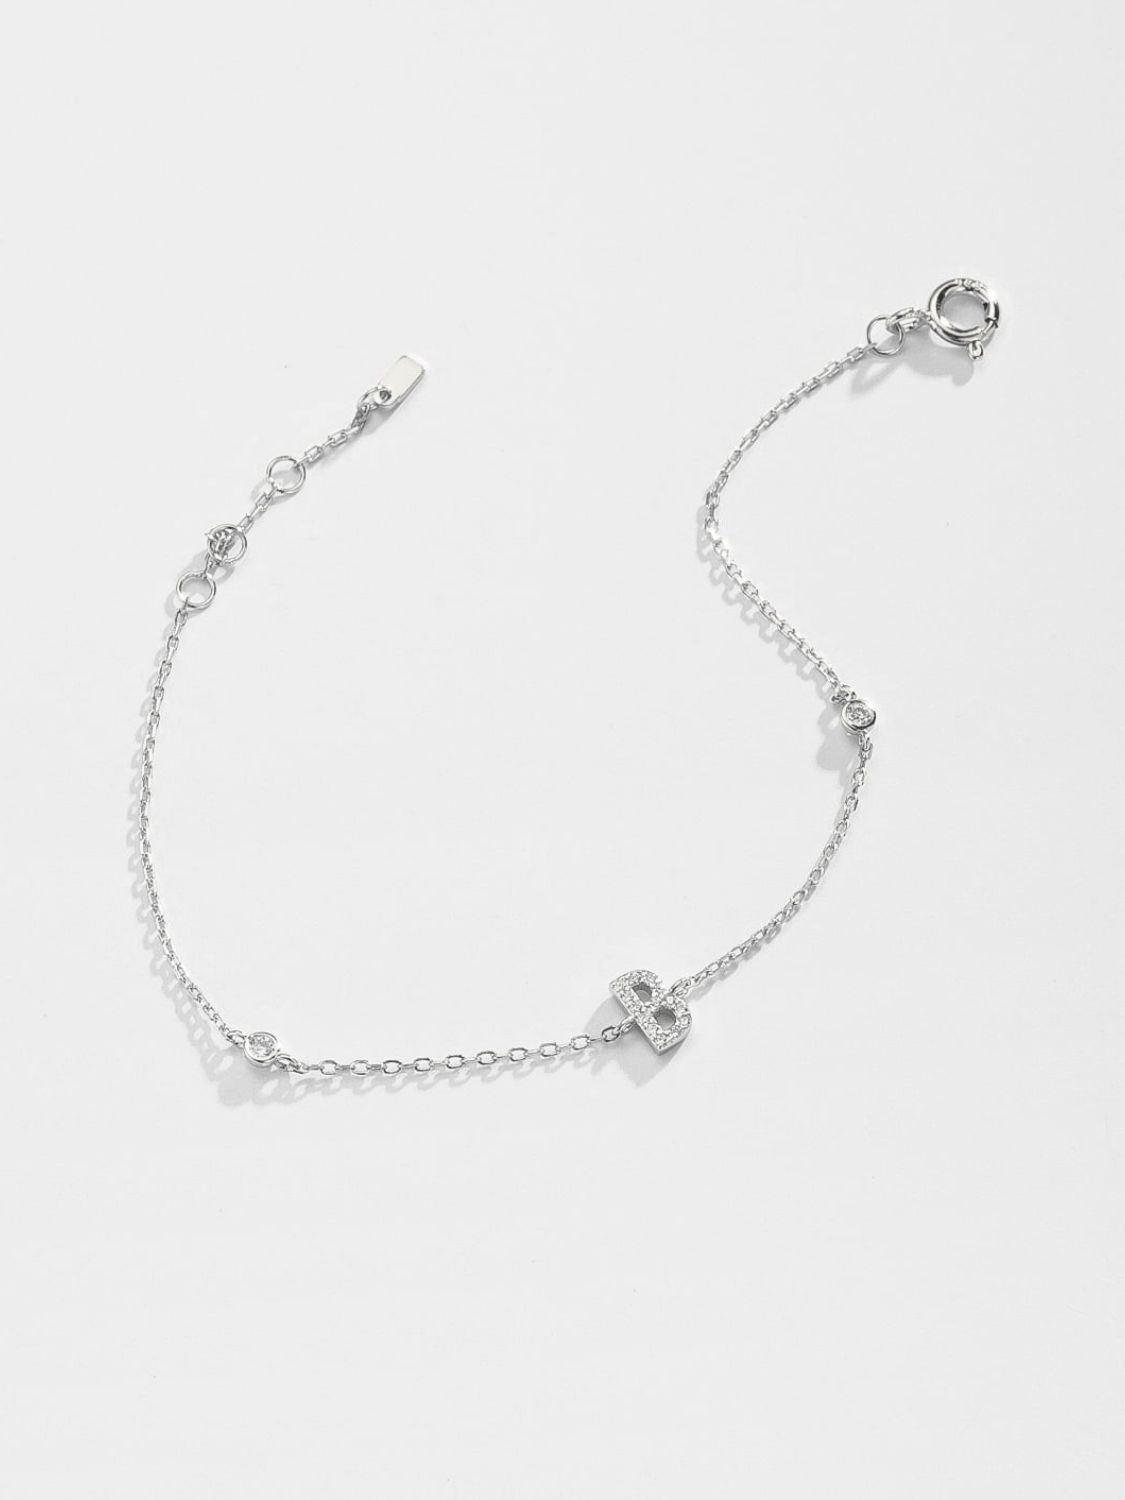 A To F Zircon 925 Sterling Silver Bracelet - Women’s Jewelry - Bracelets - 12 - 2024